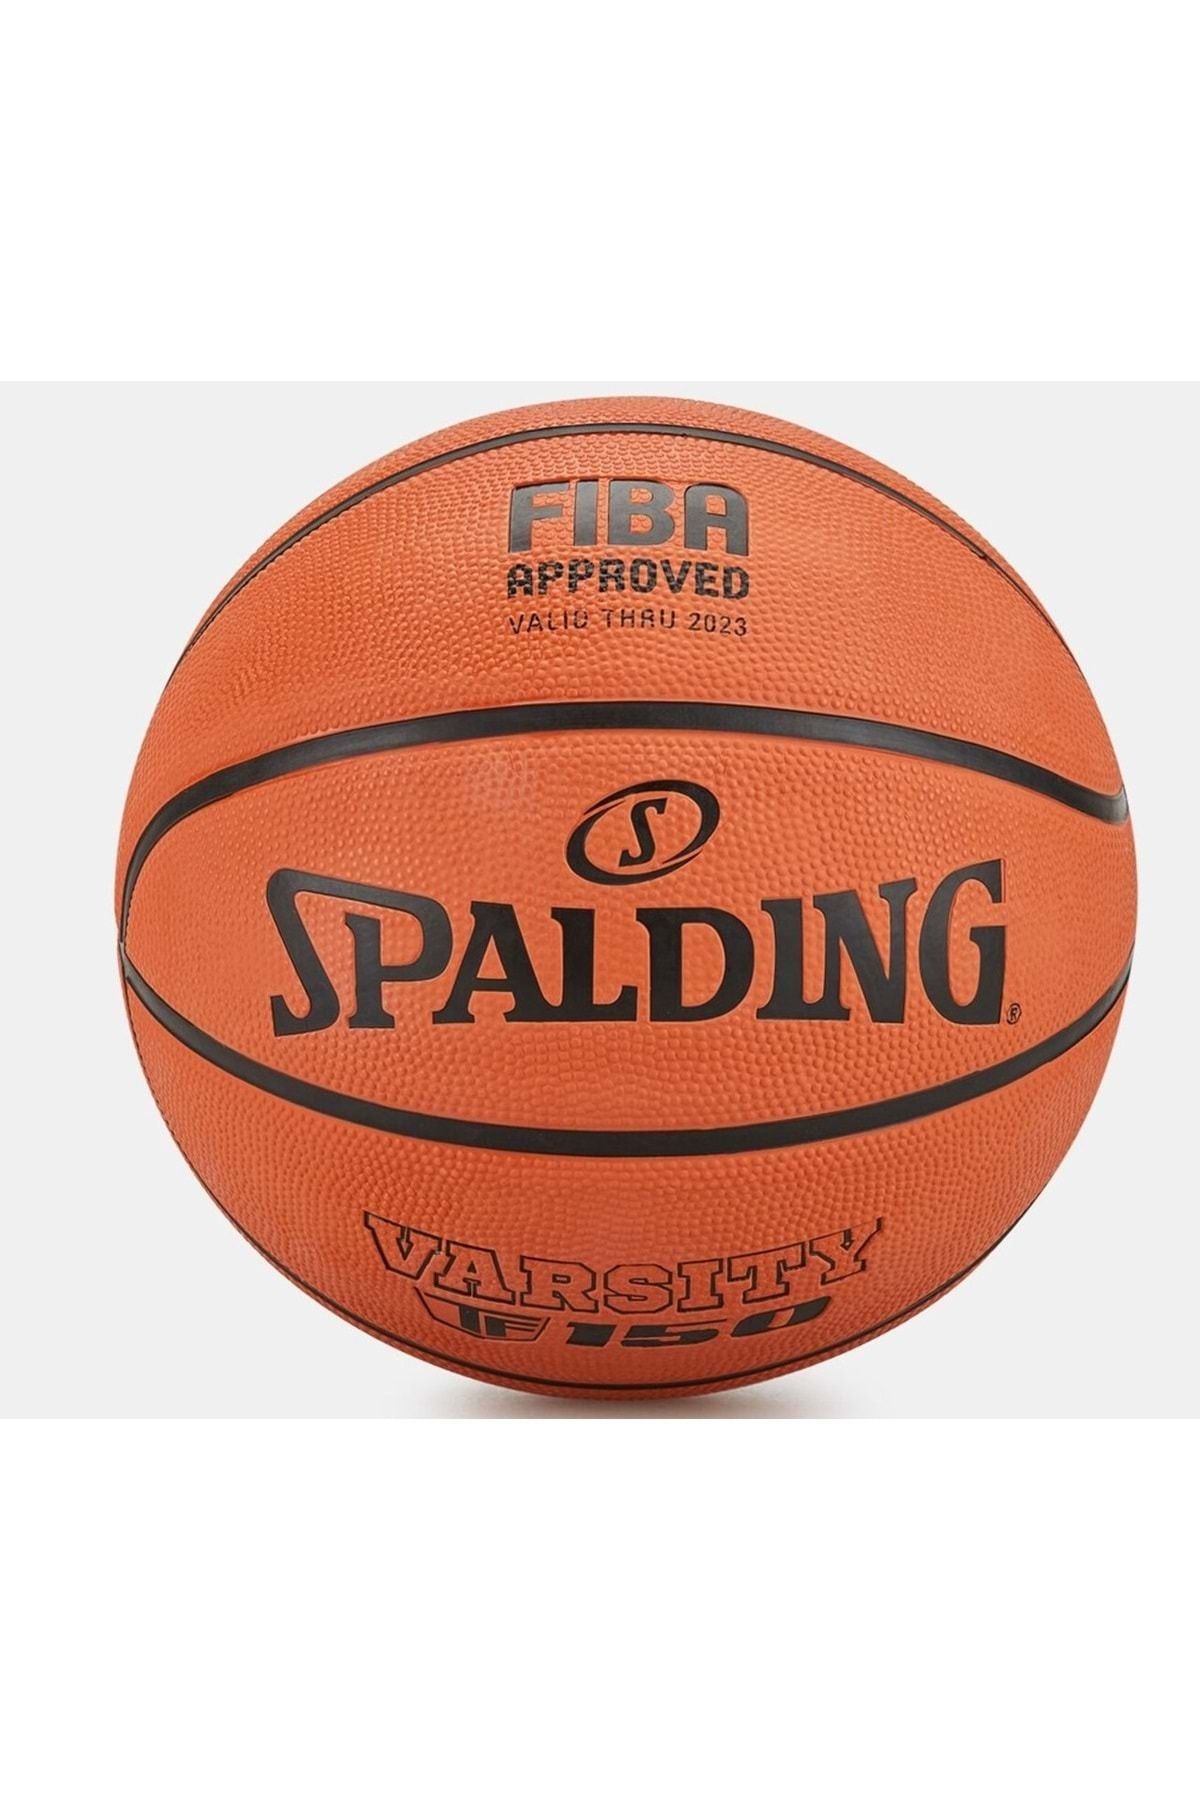 Spalding Tf-150 Basketbol Topu Varsity Size 5 Fıba Approved - Onaylı (84423z)